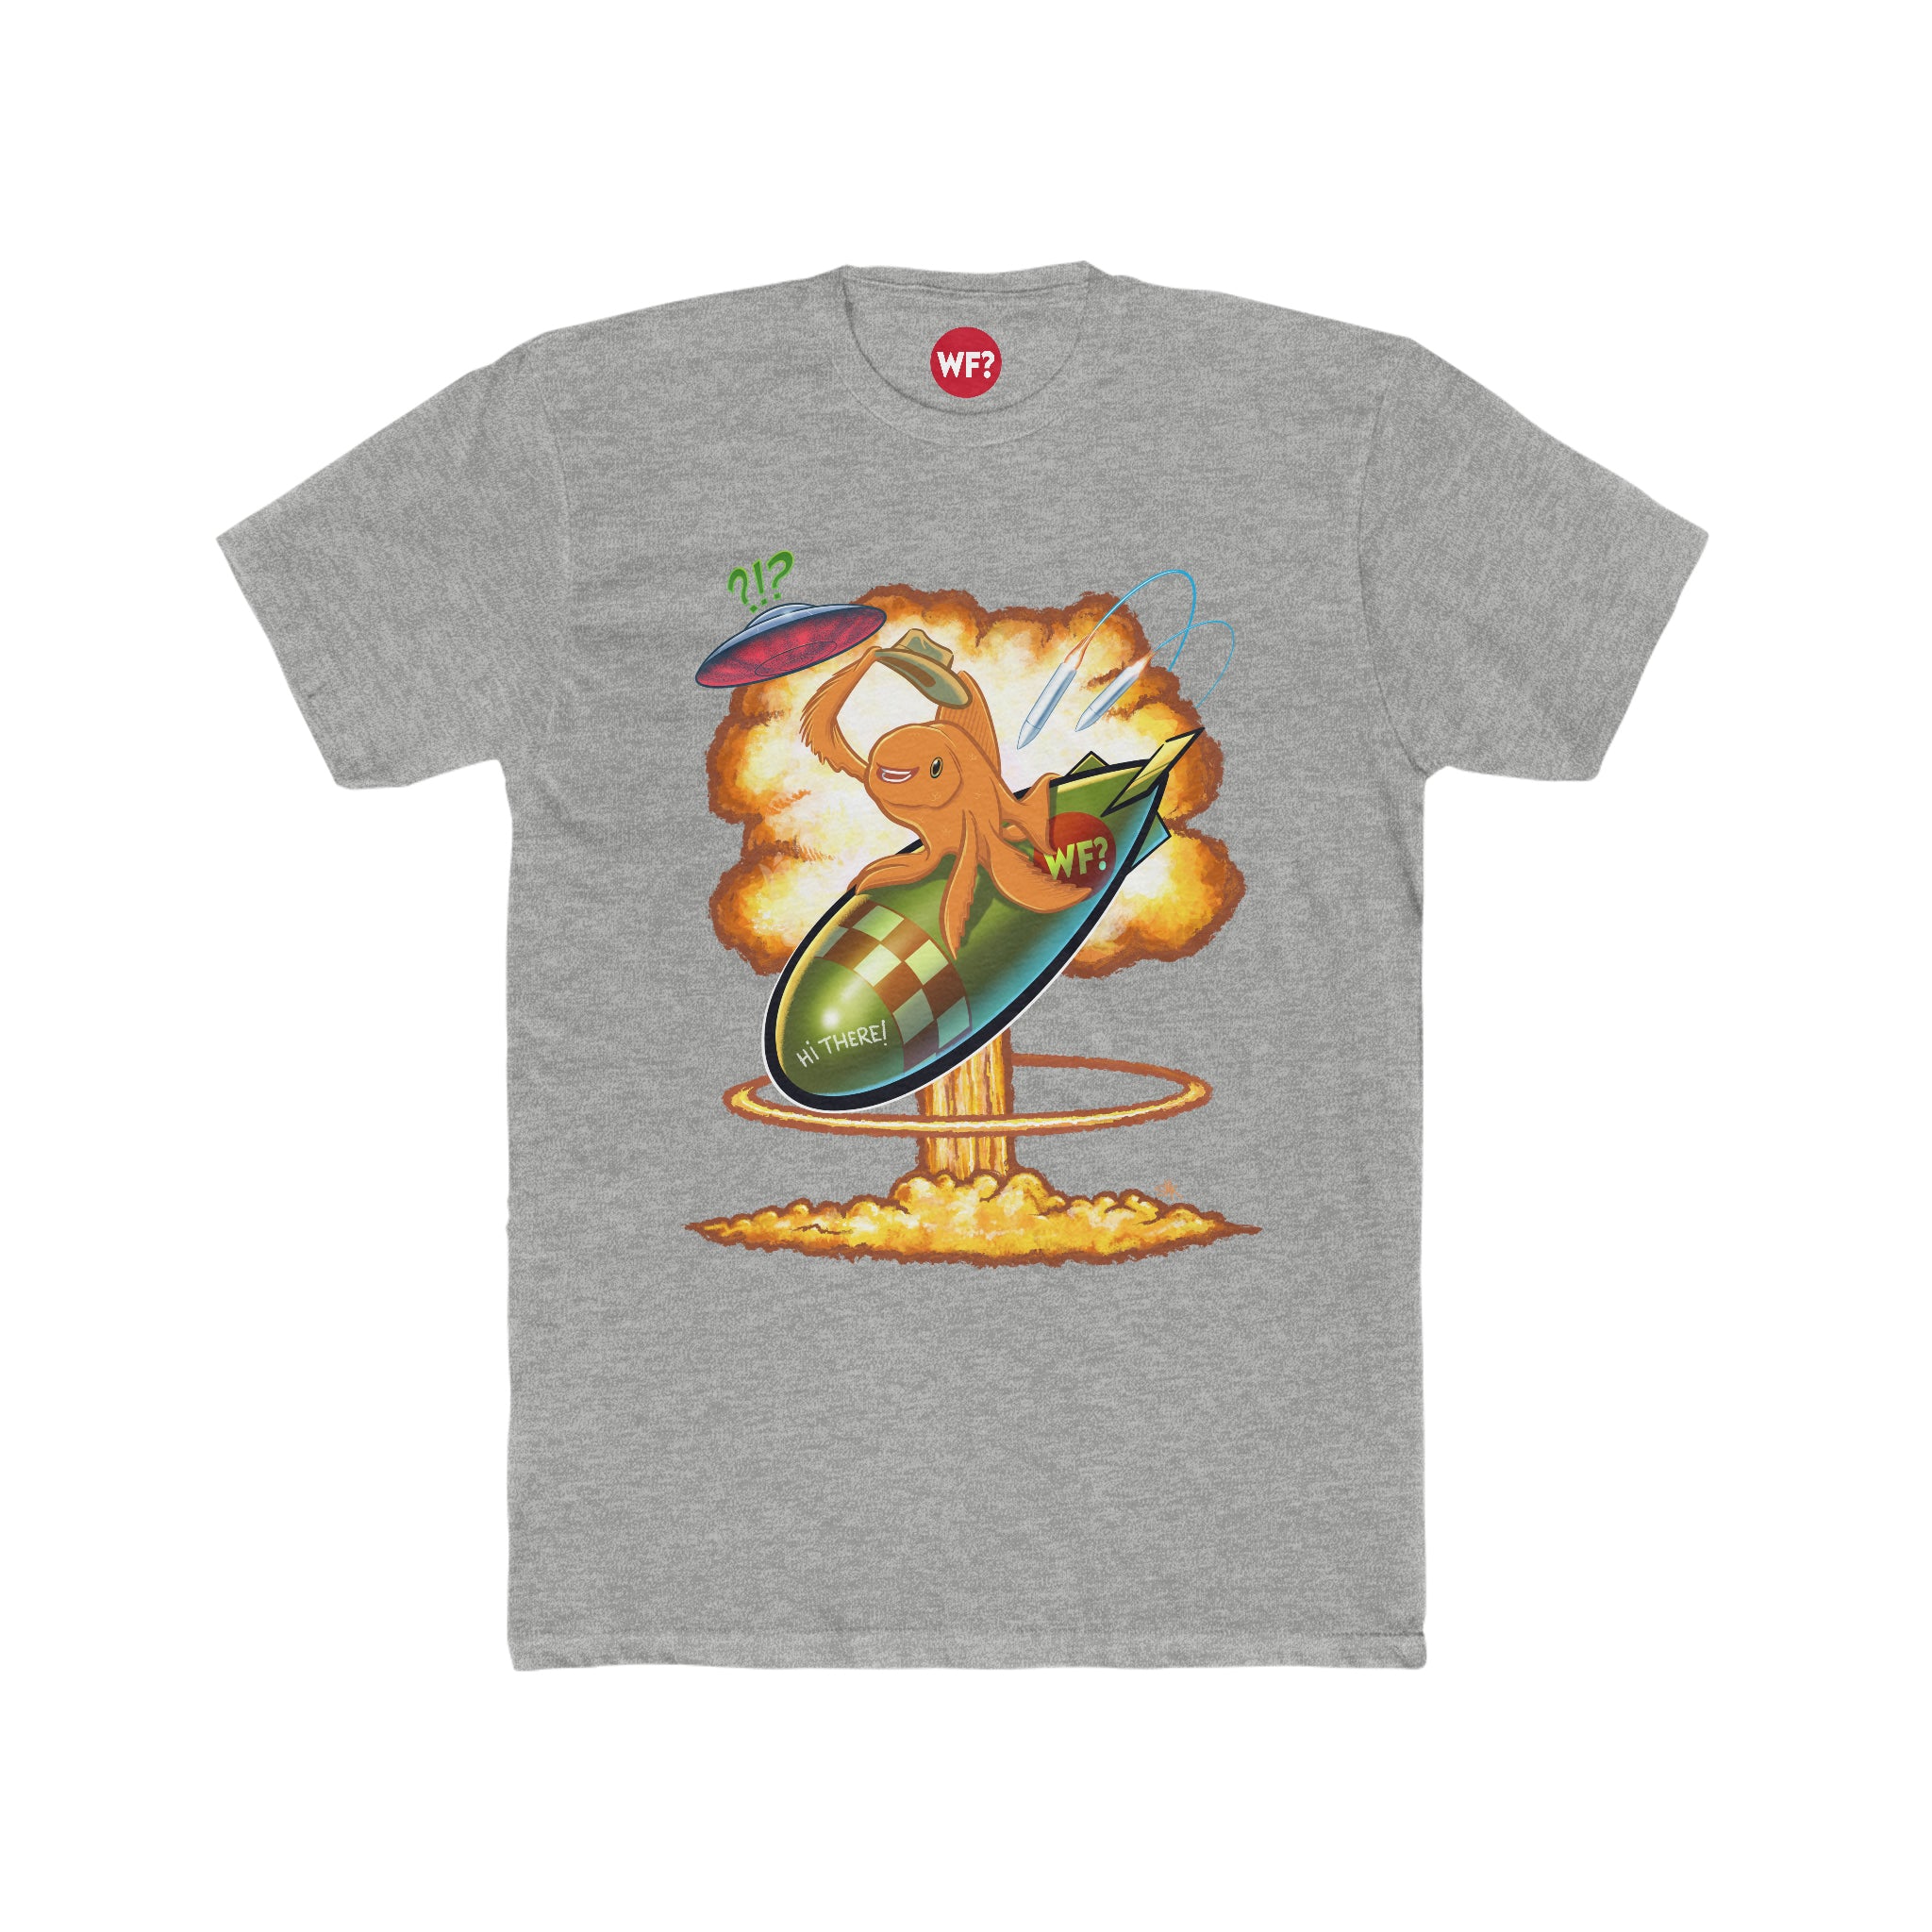 7/3 World War 3 Limited T-Shirt